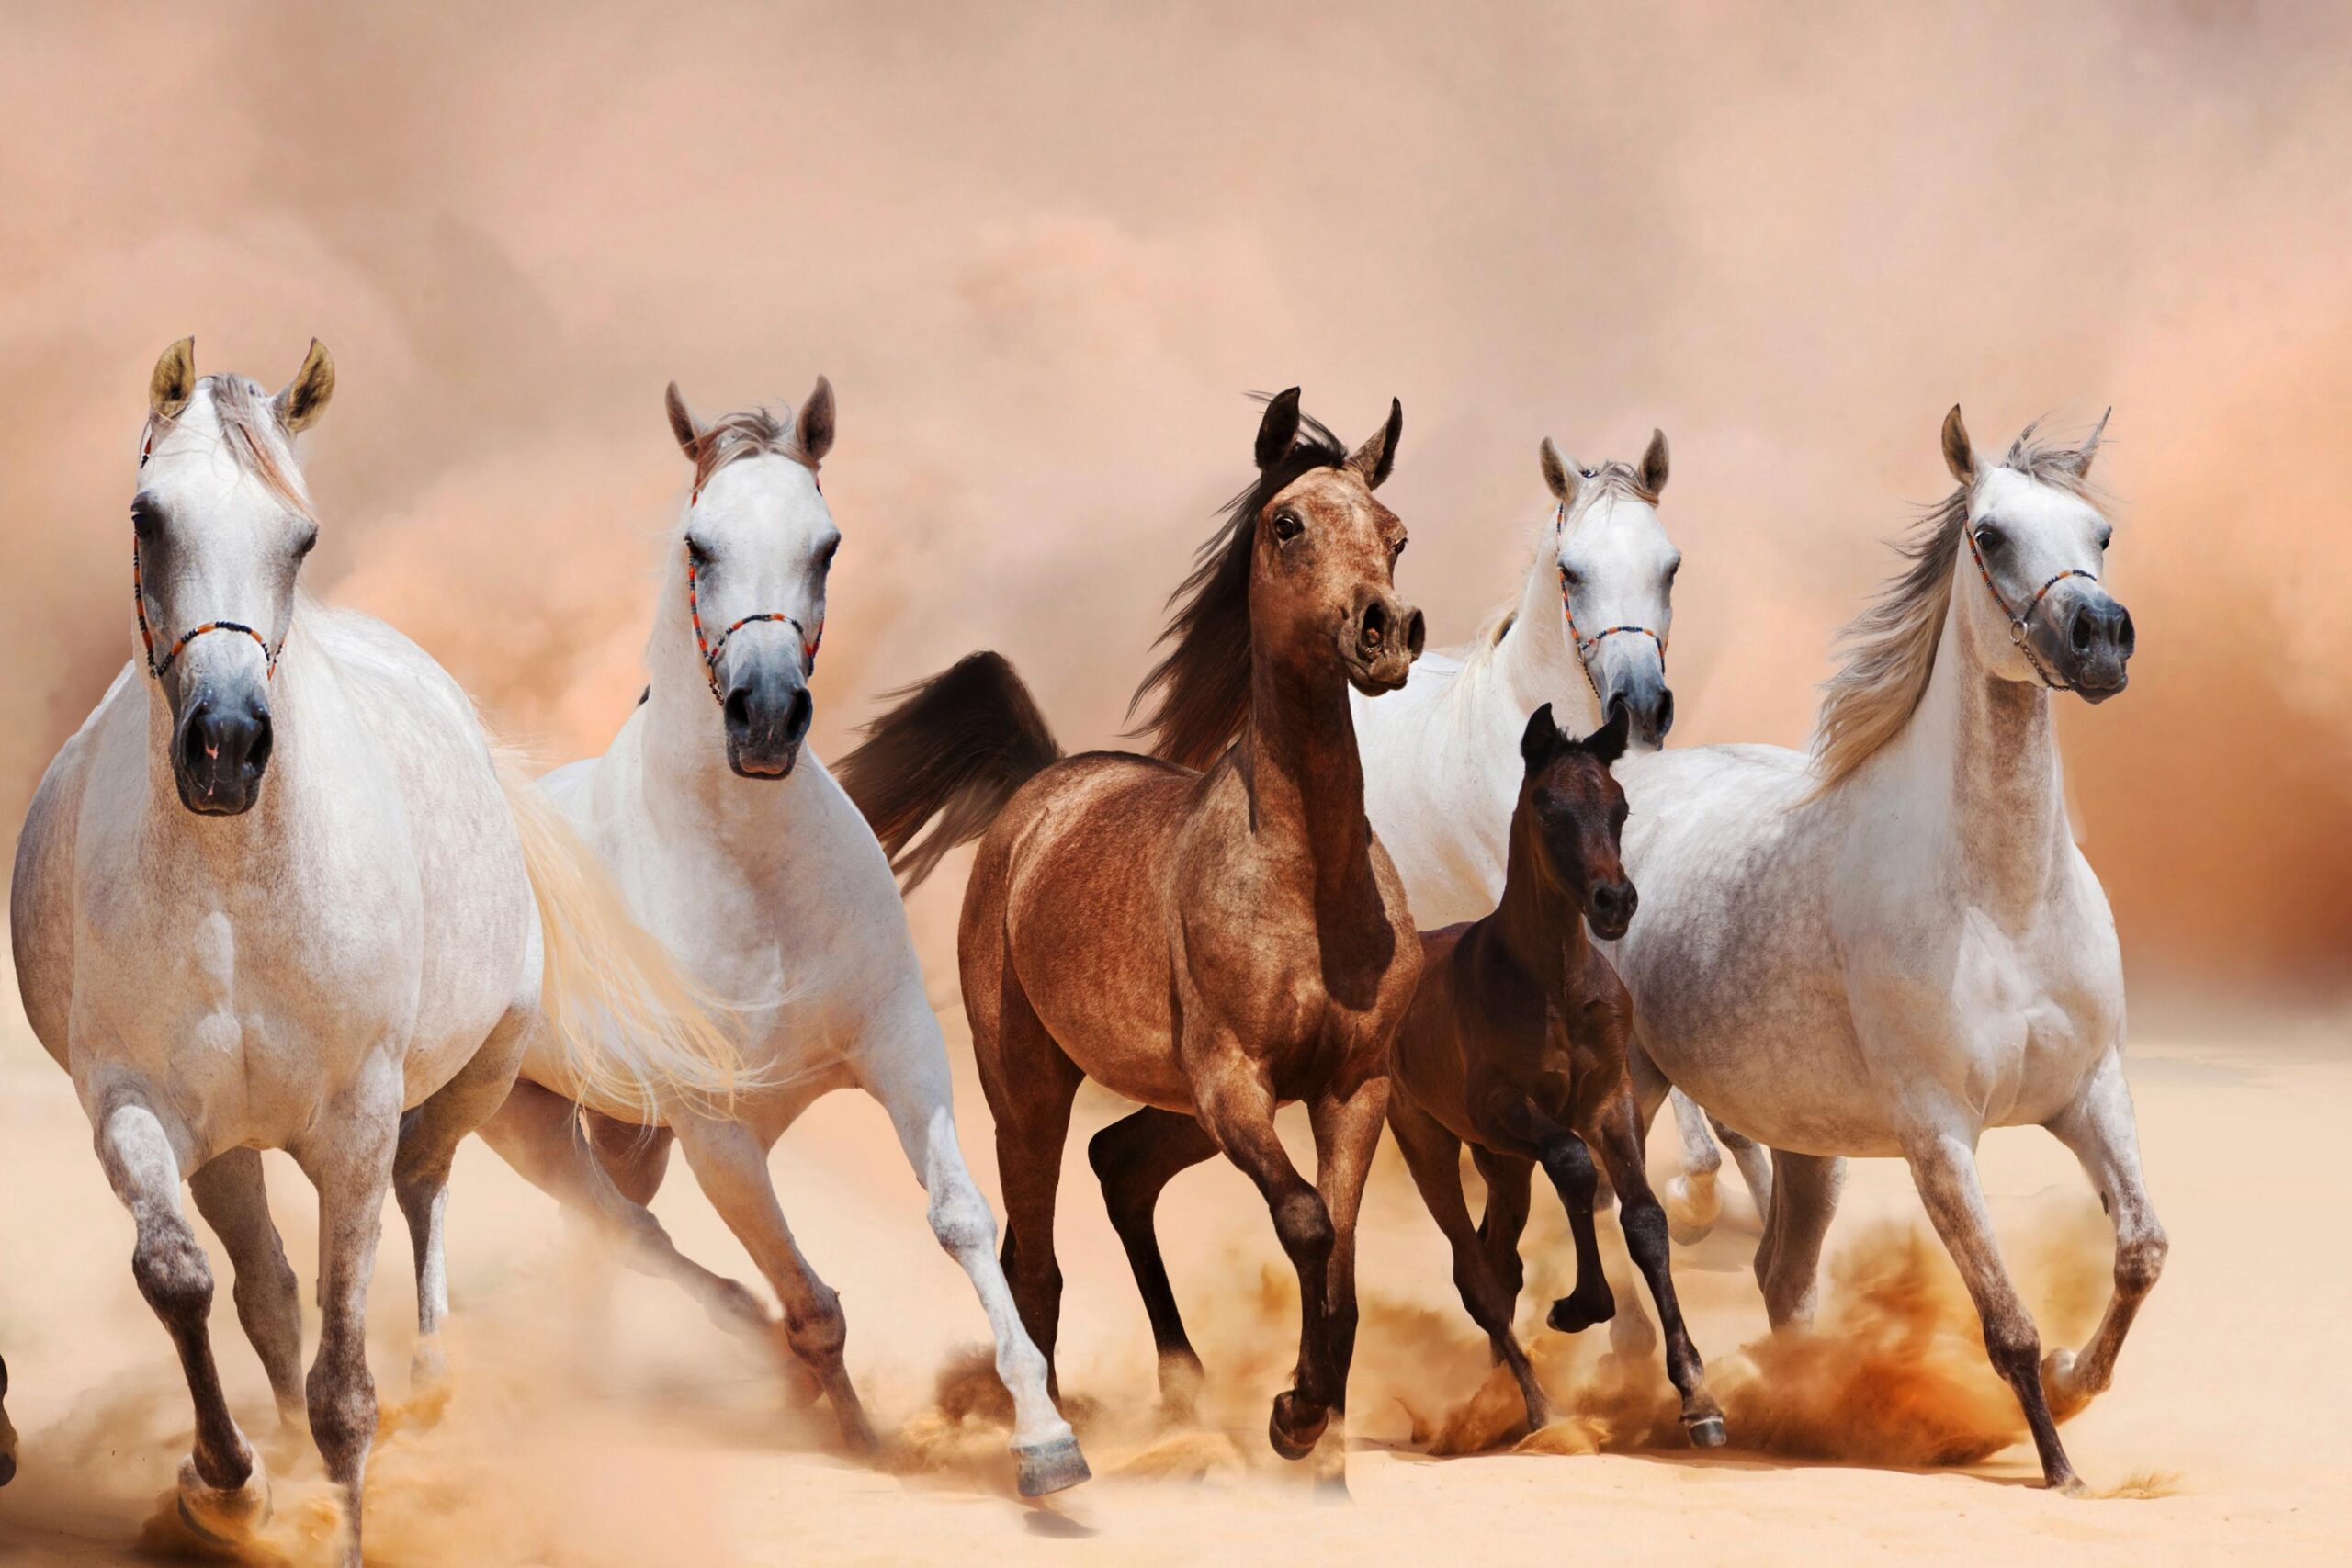 Najdi-hevoset ja niiden ominaisuudet 1 skaalaus 1 - Unen tulkinnan salaisuudet